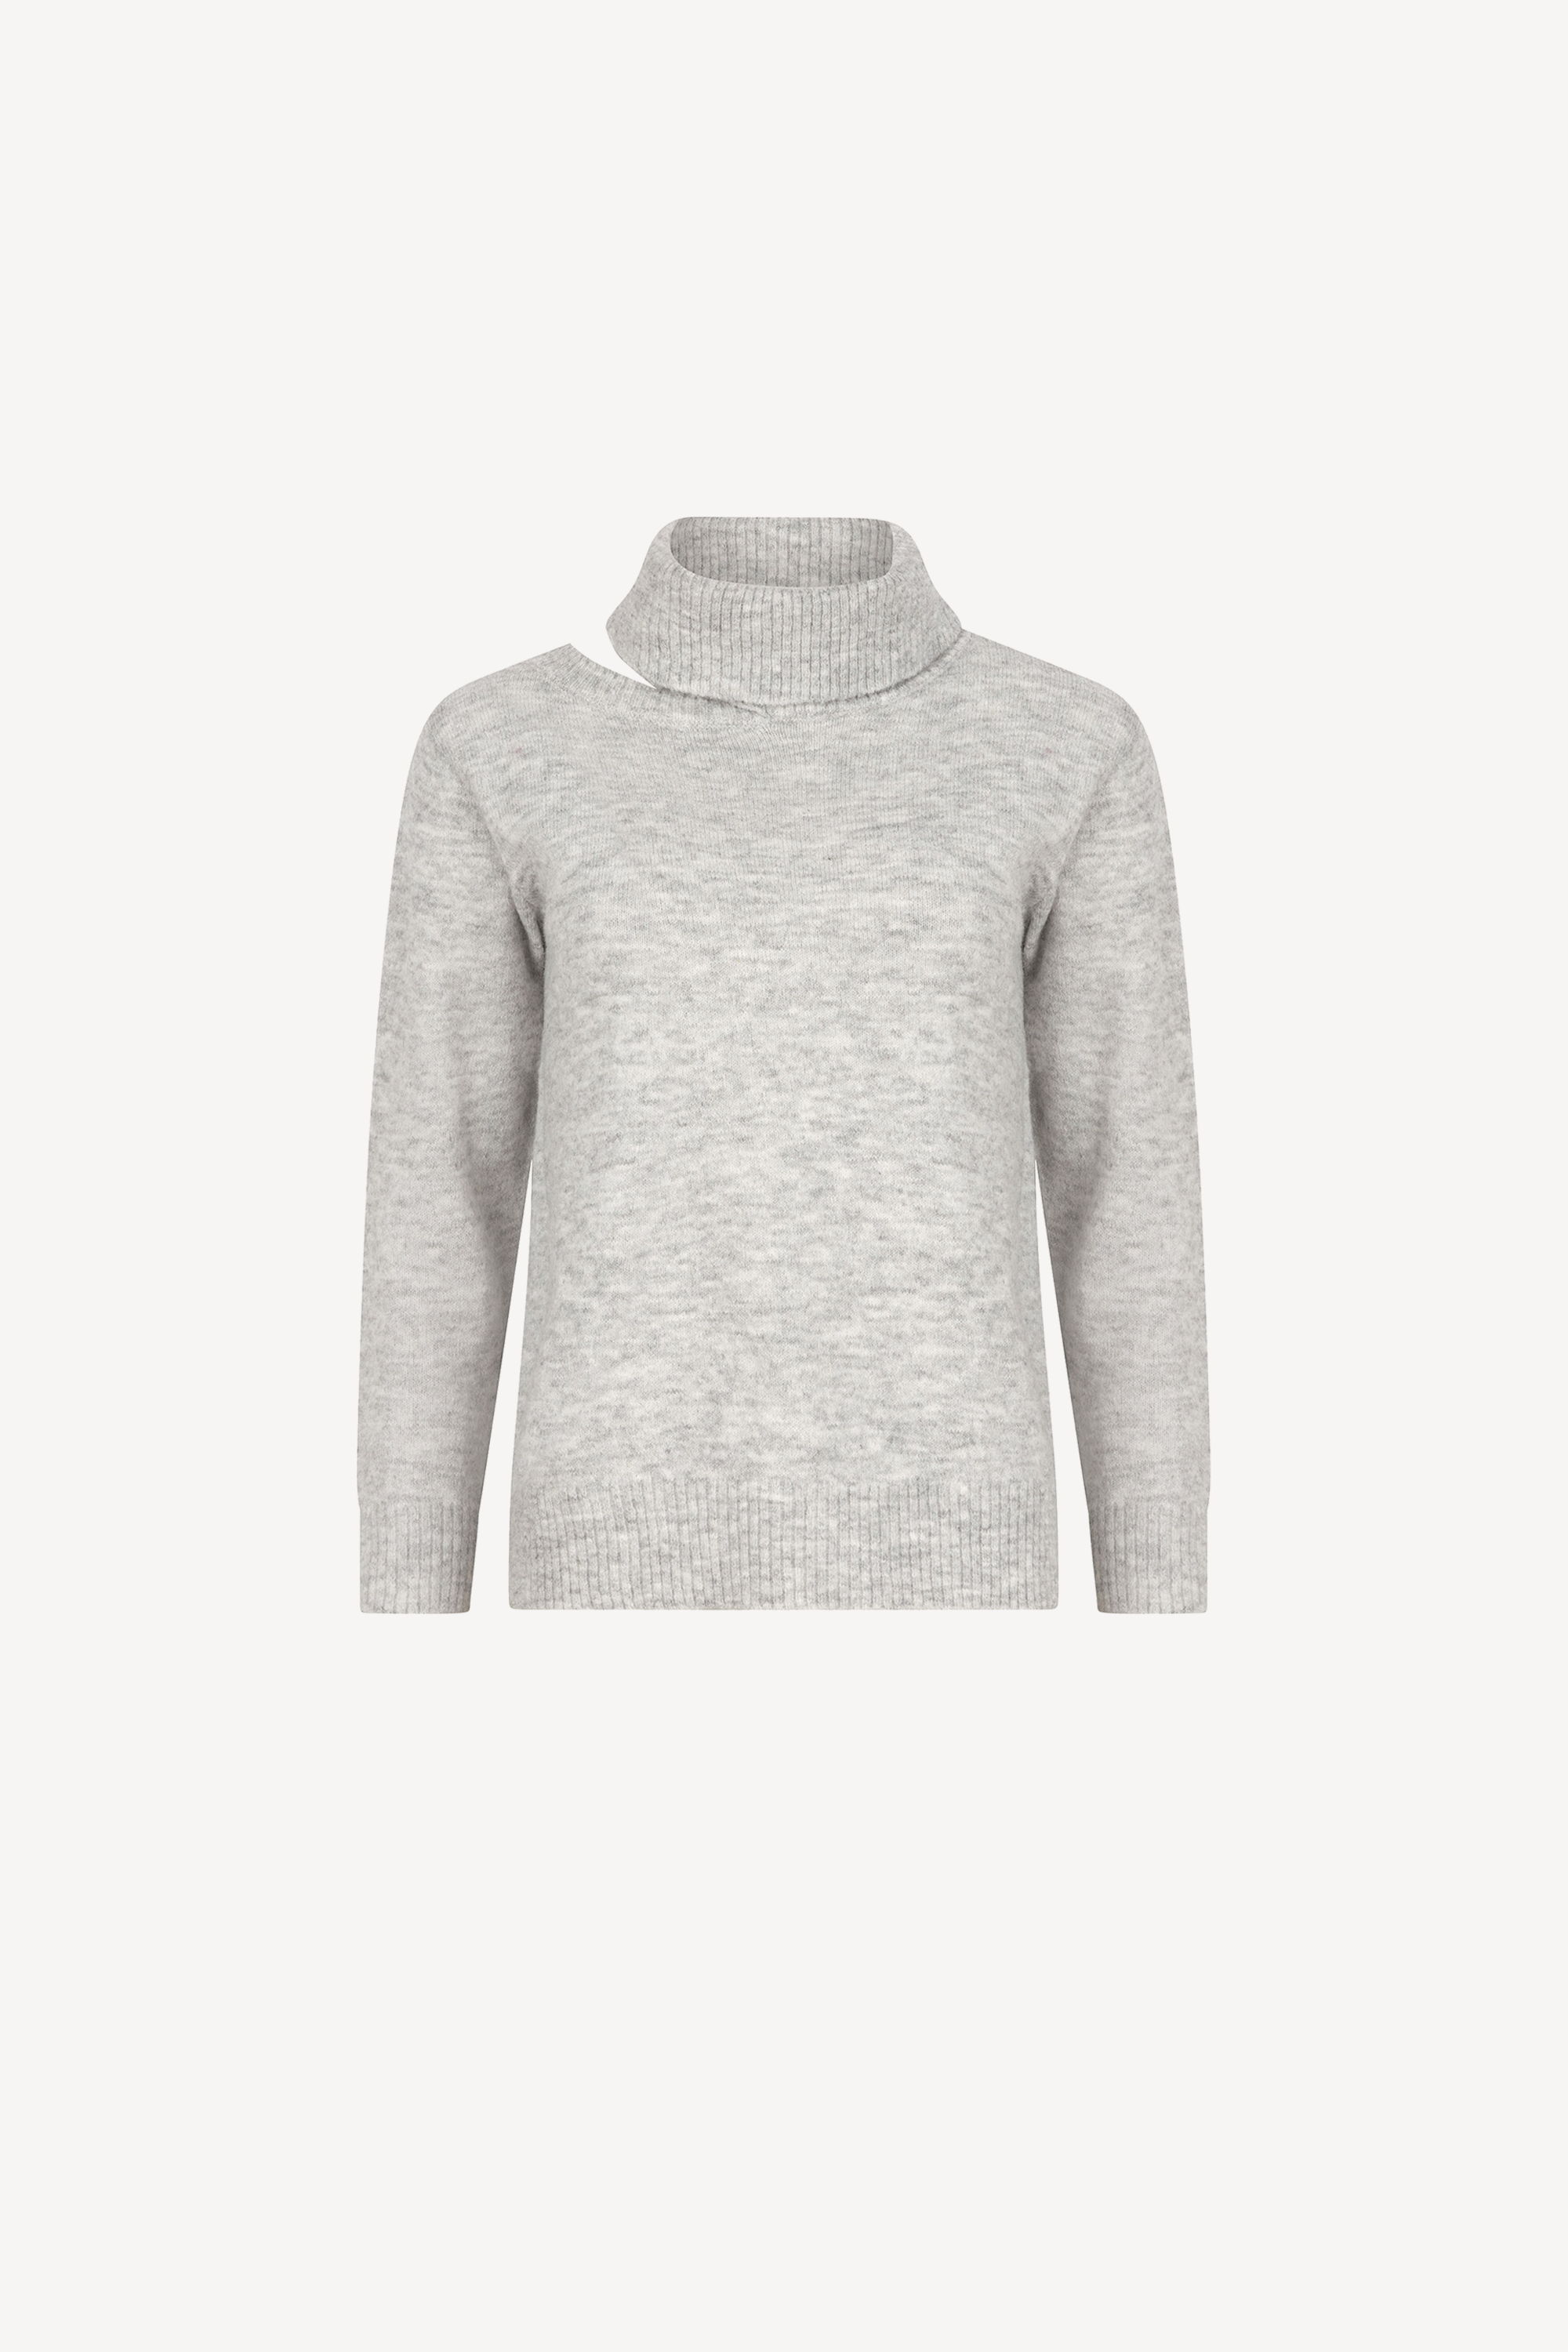 Aubrey Knitted Sweater Grey Melange